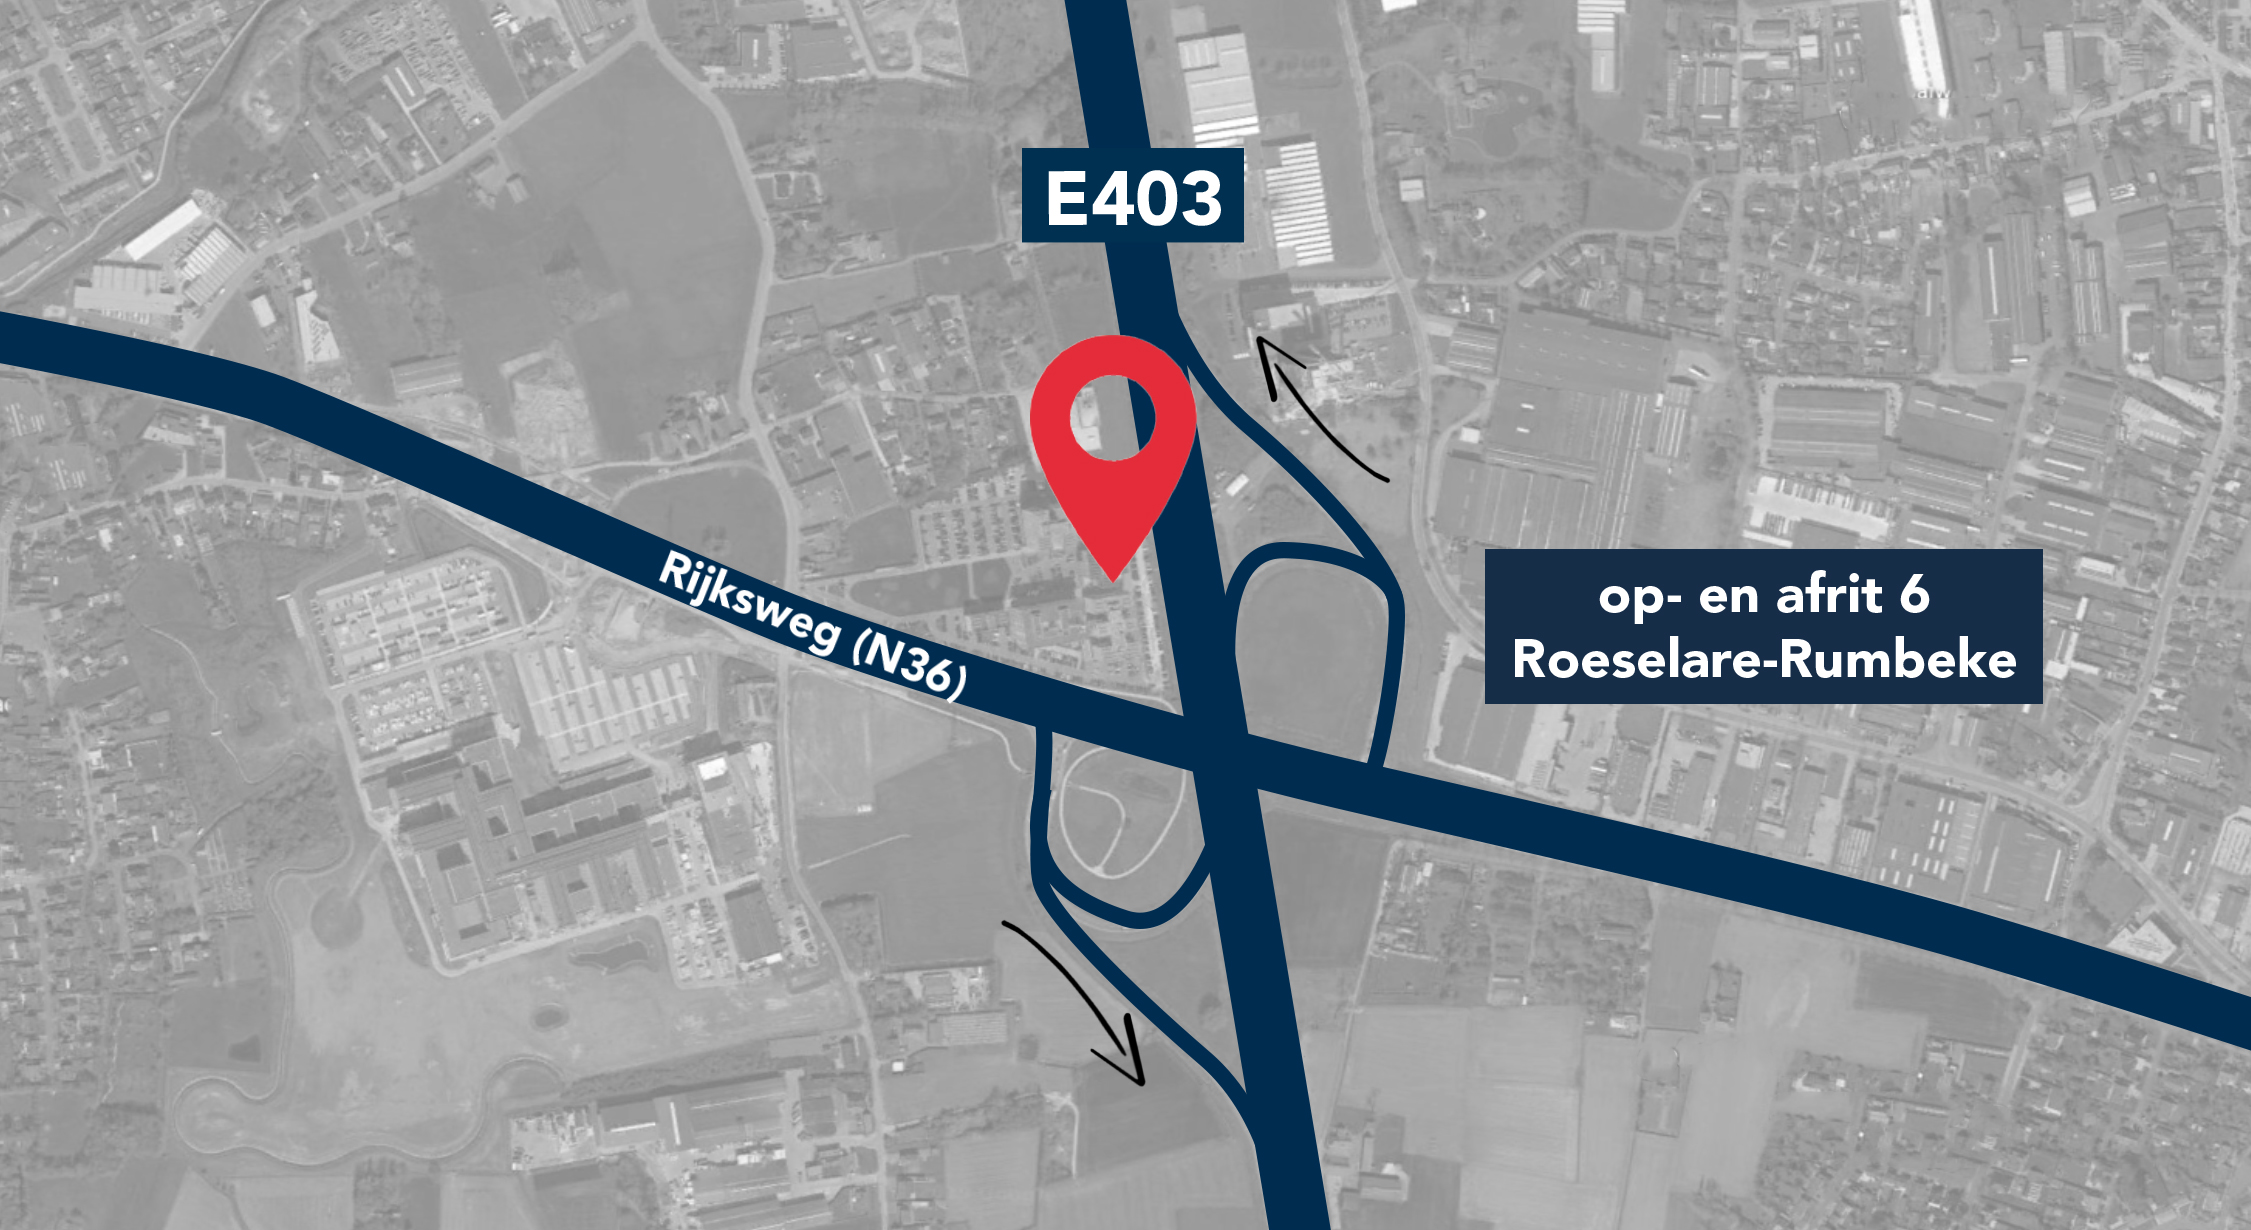 Accent Business Park is fantastisch gelegen langs de E403 en nabij op- en afrit 6 Roeselare-Rumbeke.